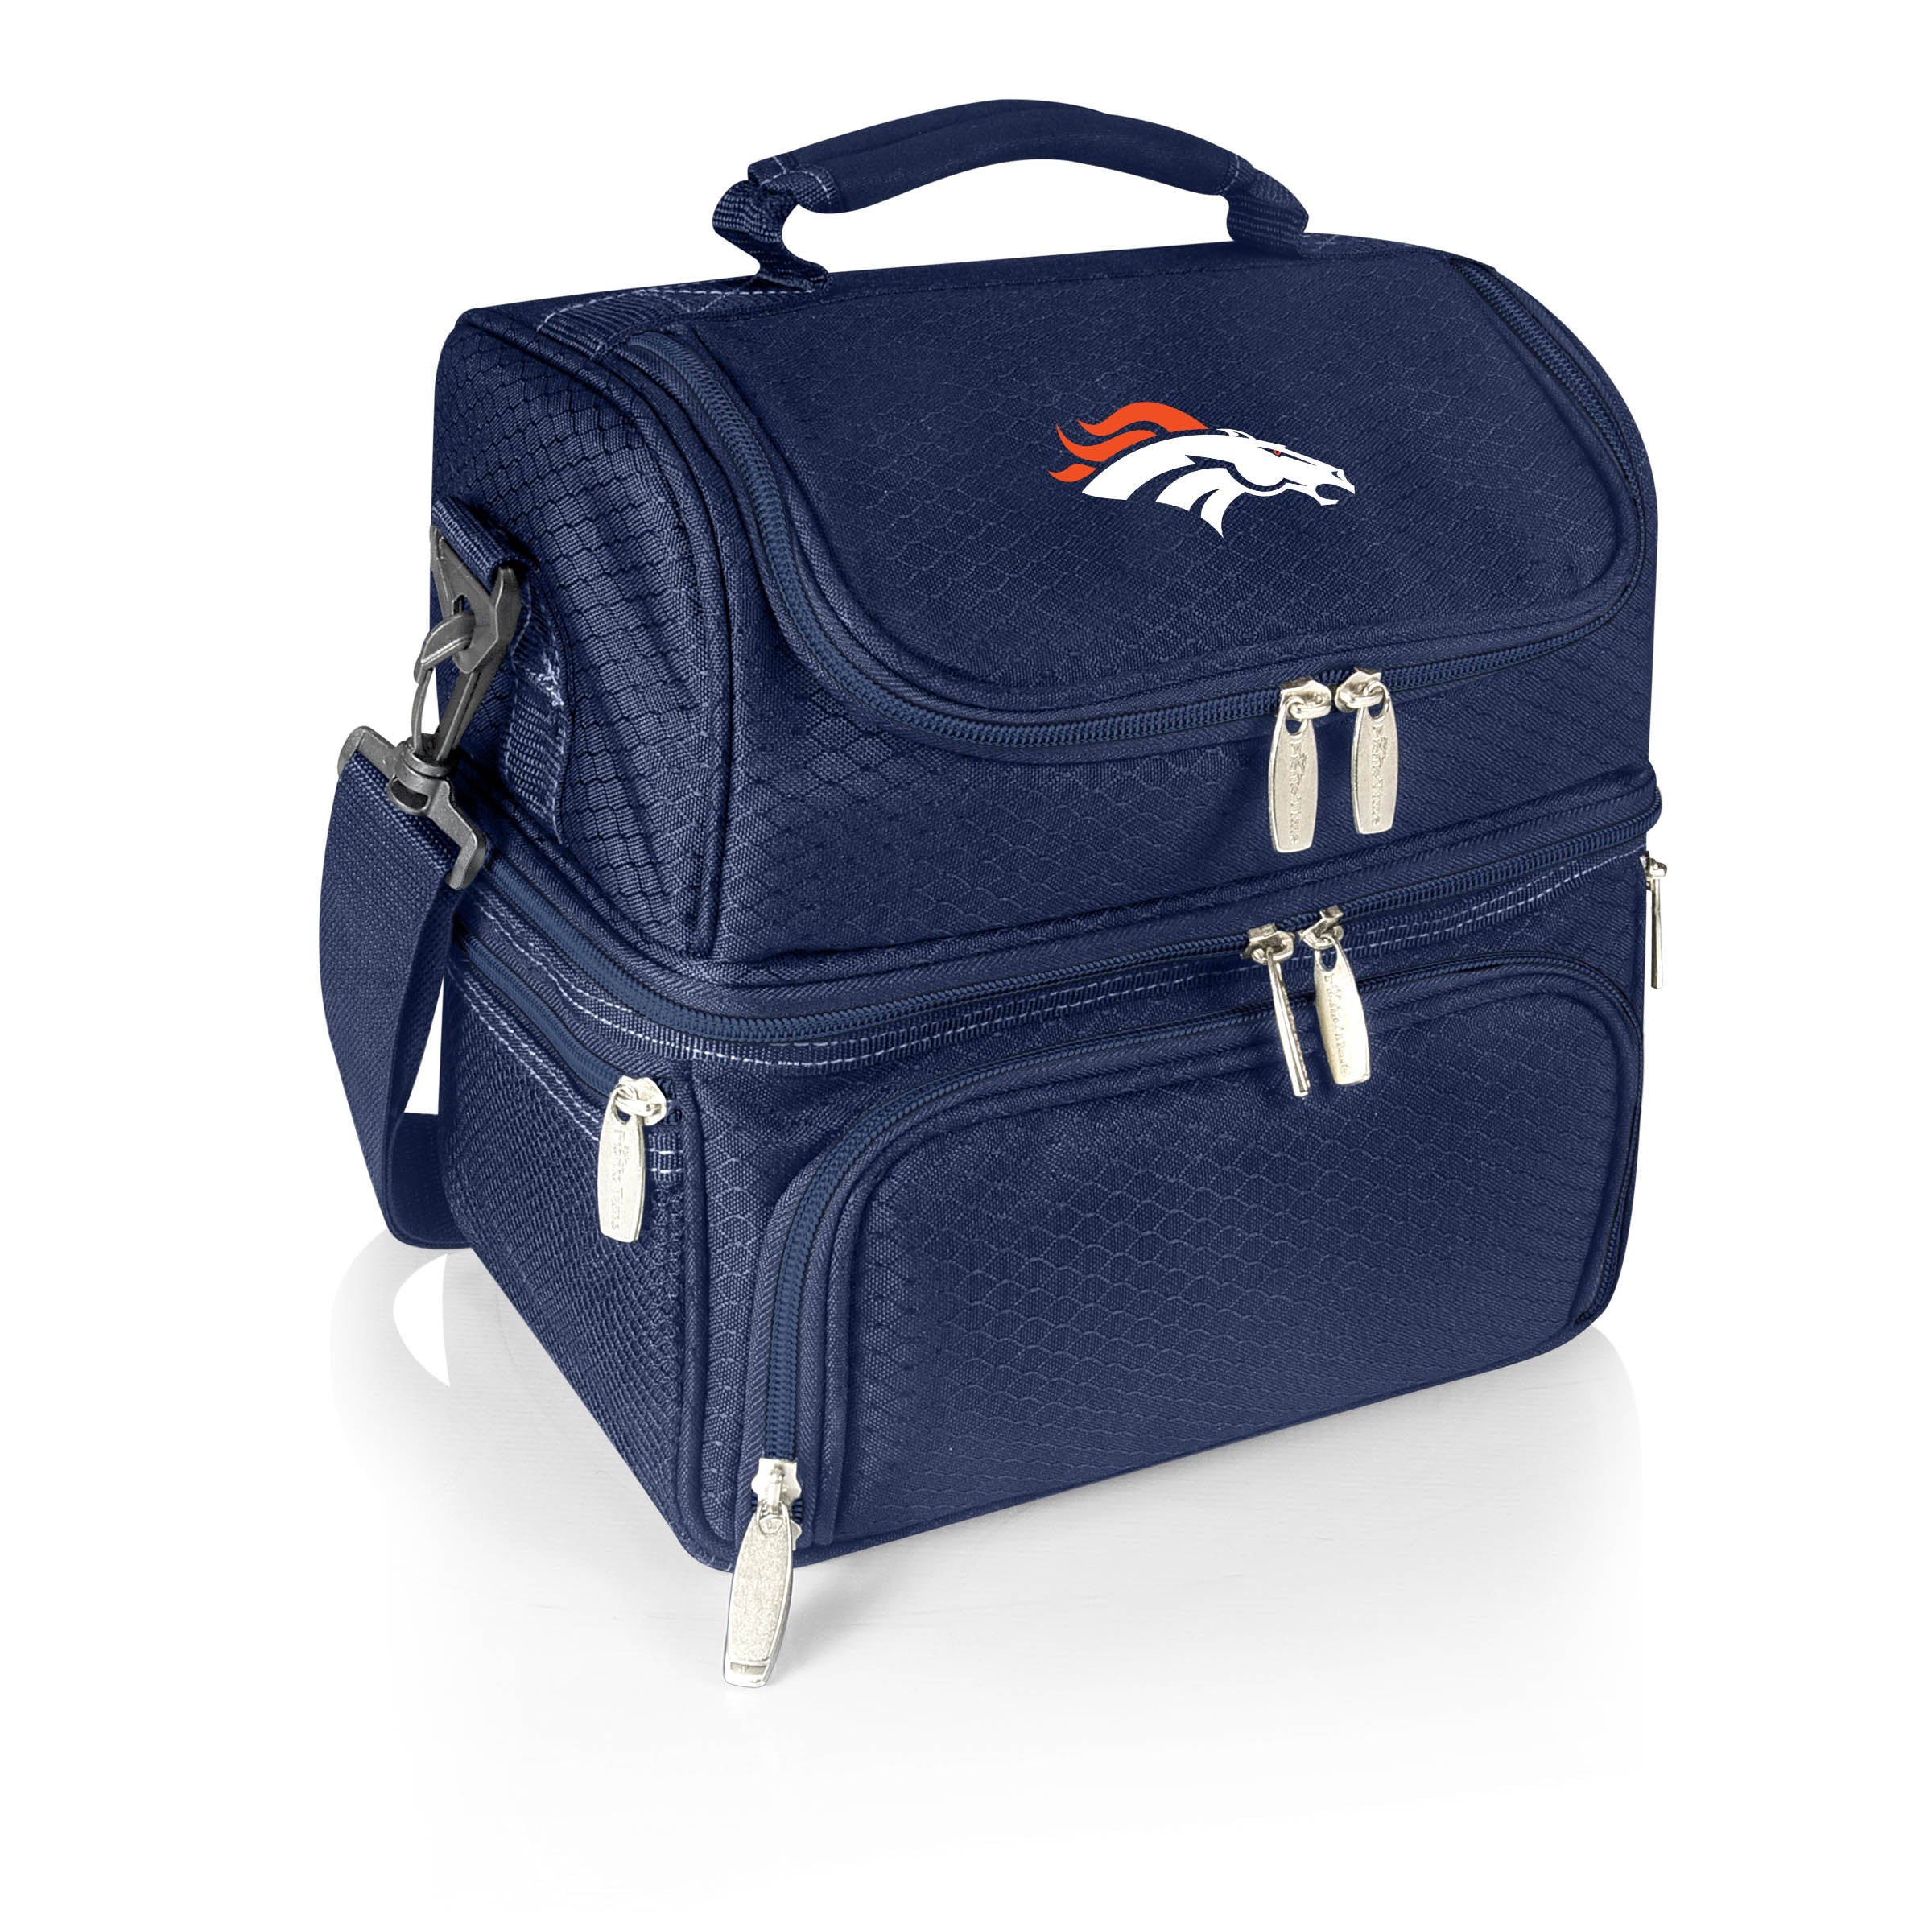 Denver Broncos - Pranzo Lunch Bag Cooler with Utensils